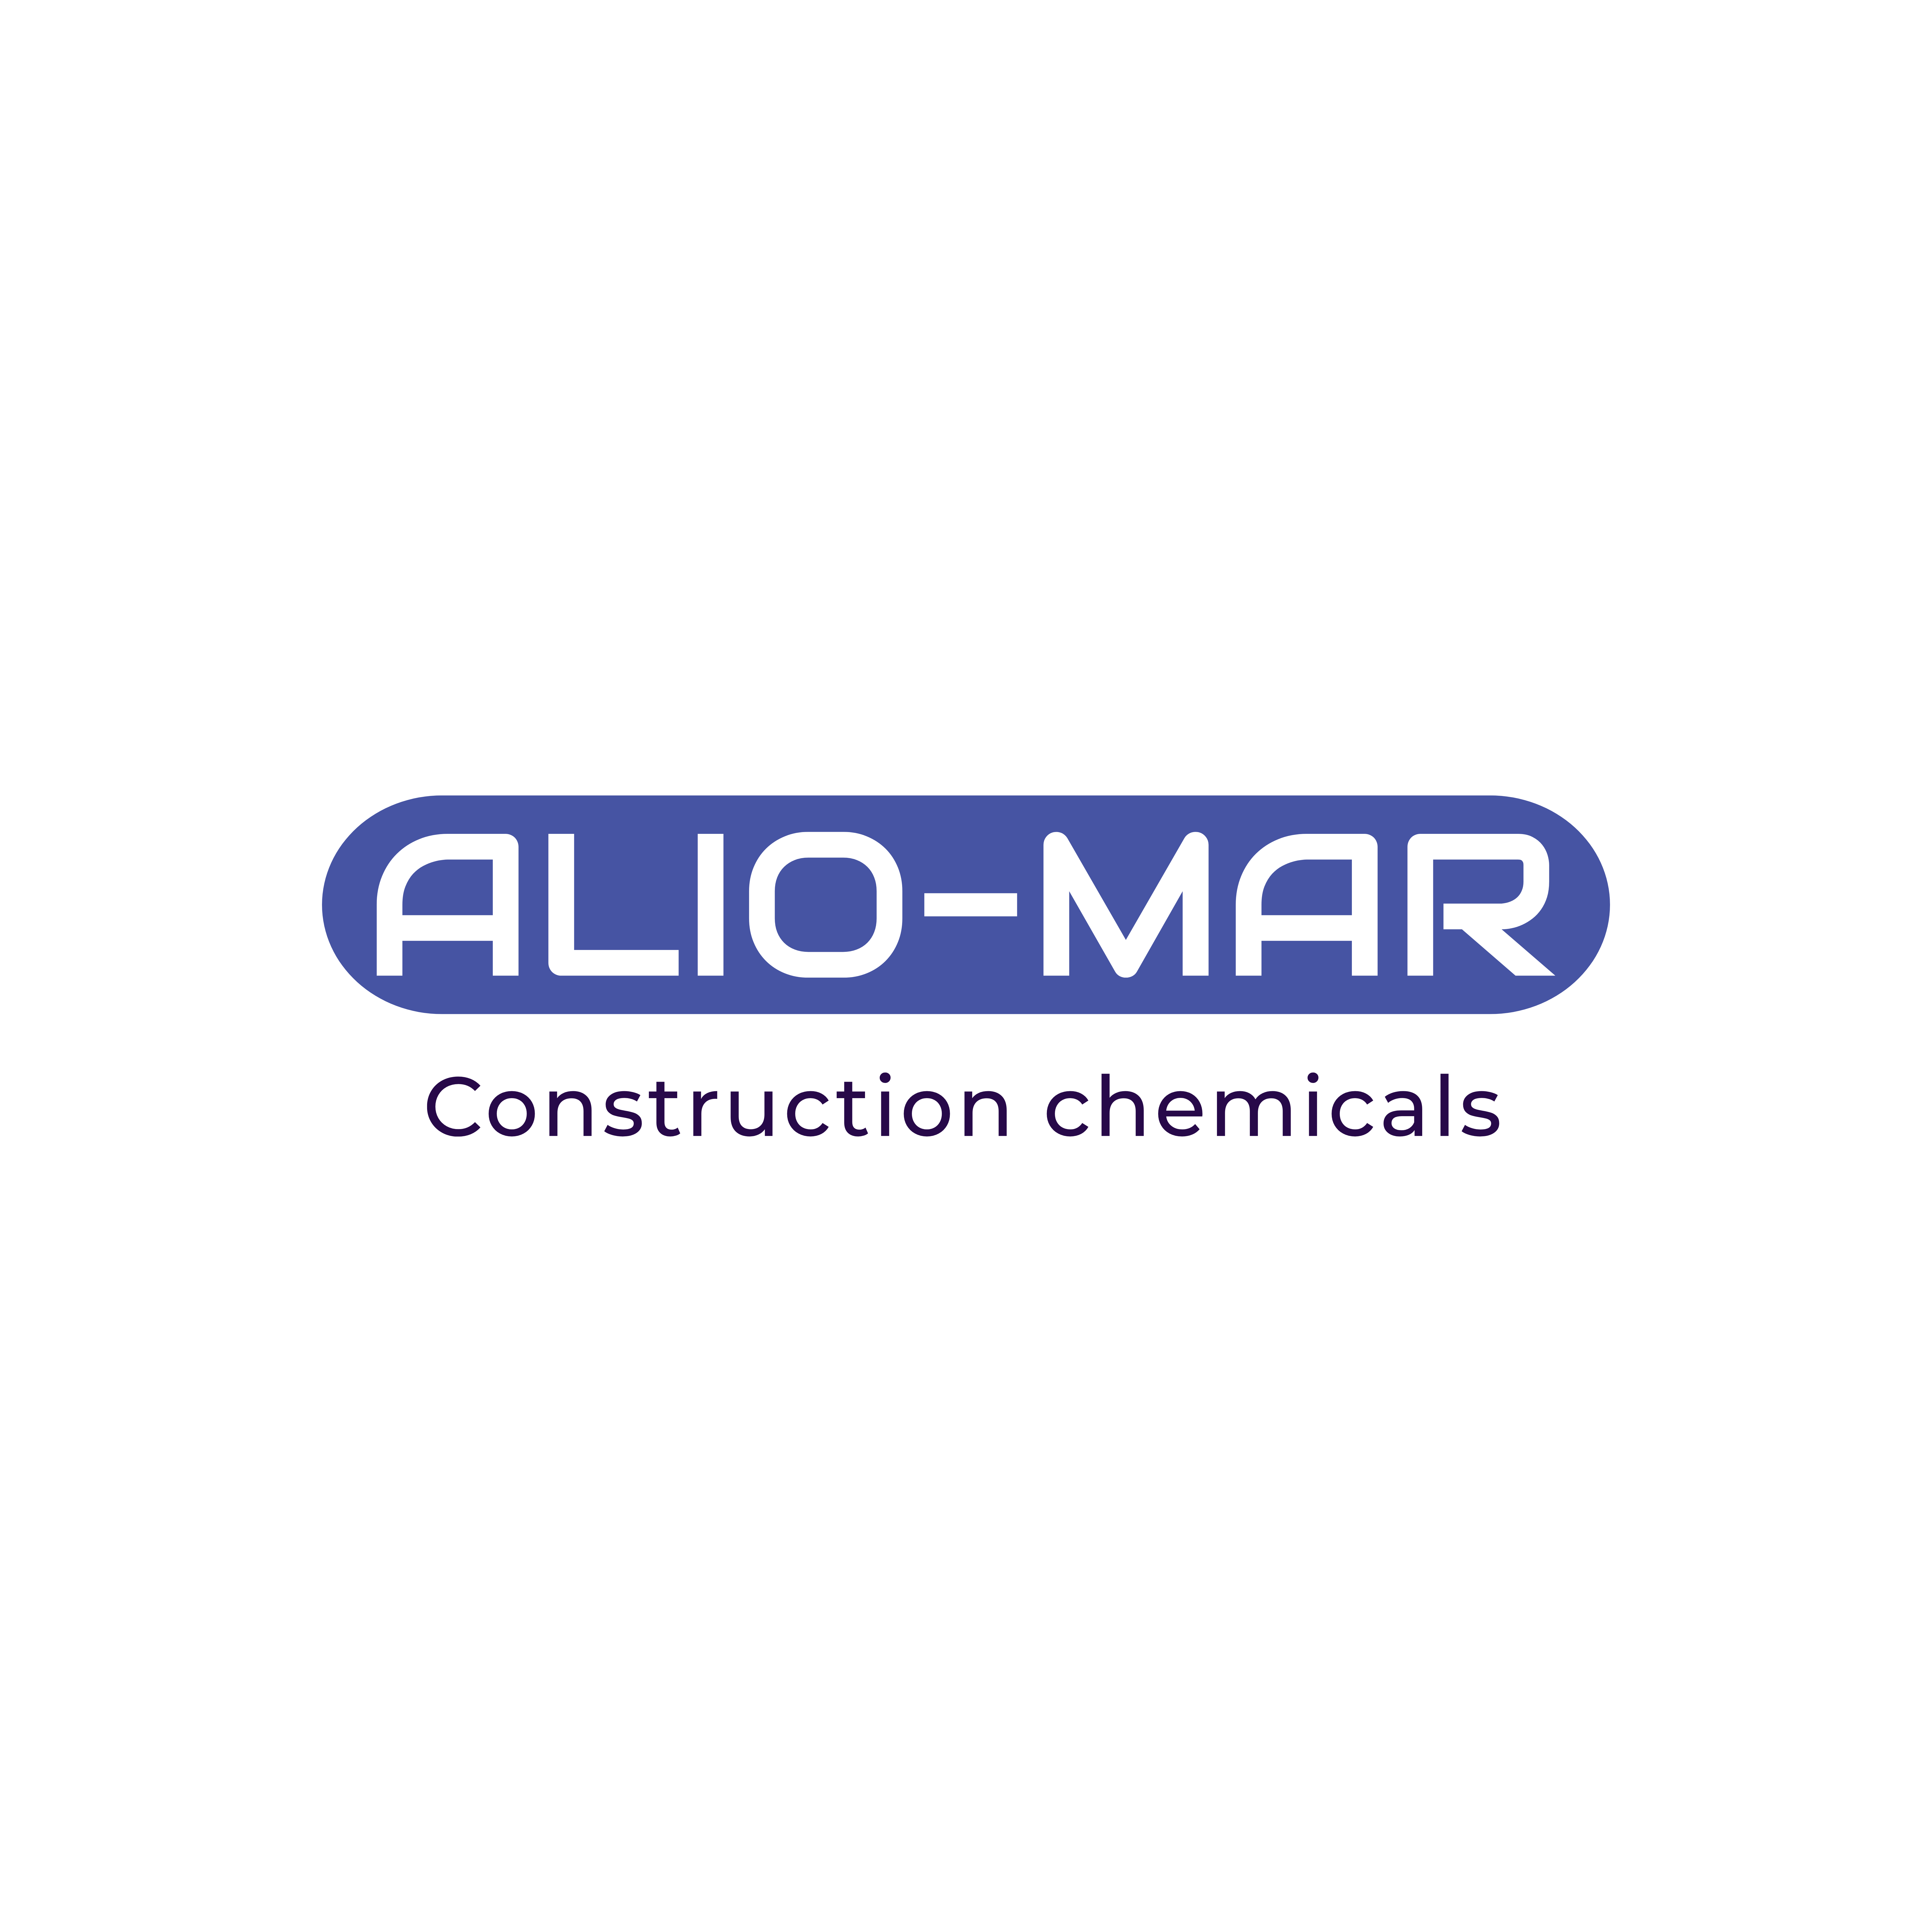 Alio-Mar كيماويات البناء و التشييد والمقاولات